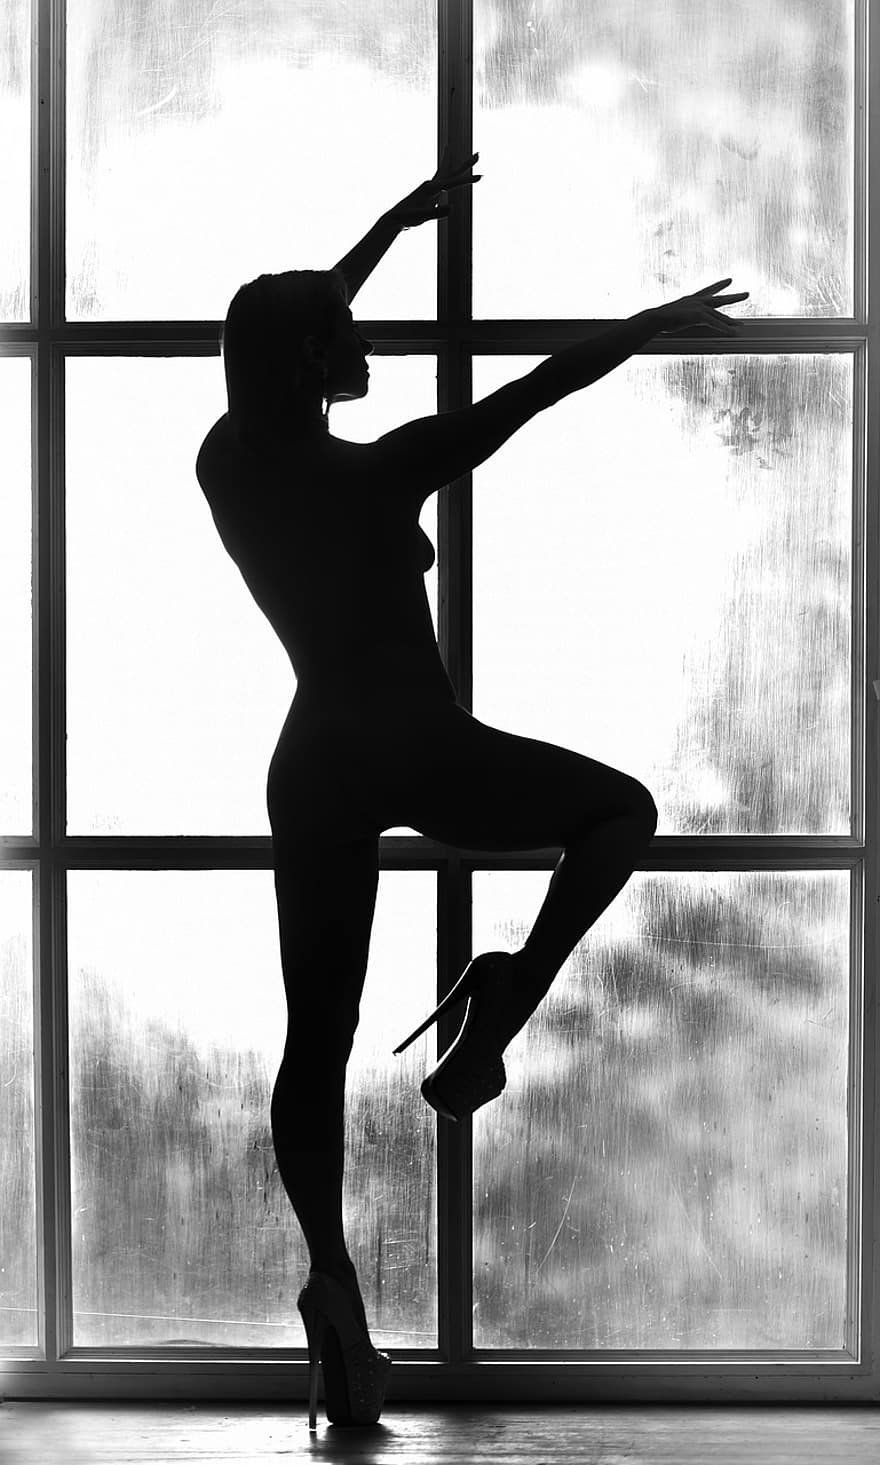 moteris, modelis, kūnas, siluetas, skaičius, grandinės, langas, šviesa, šešėlis, laikysena, avalynė